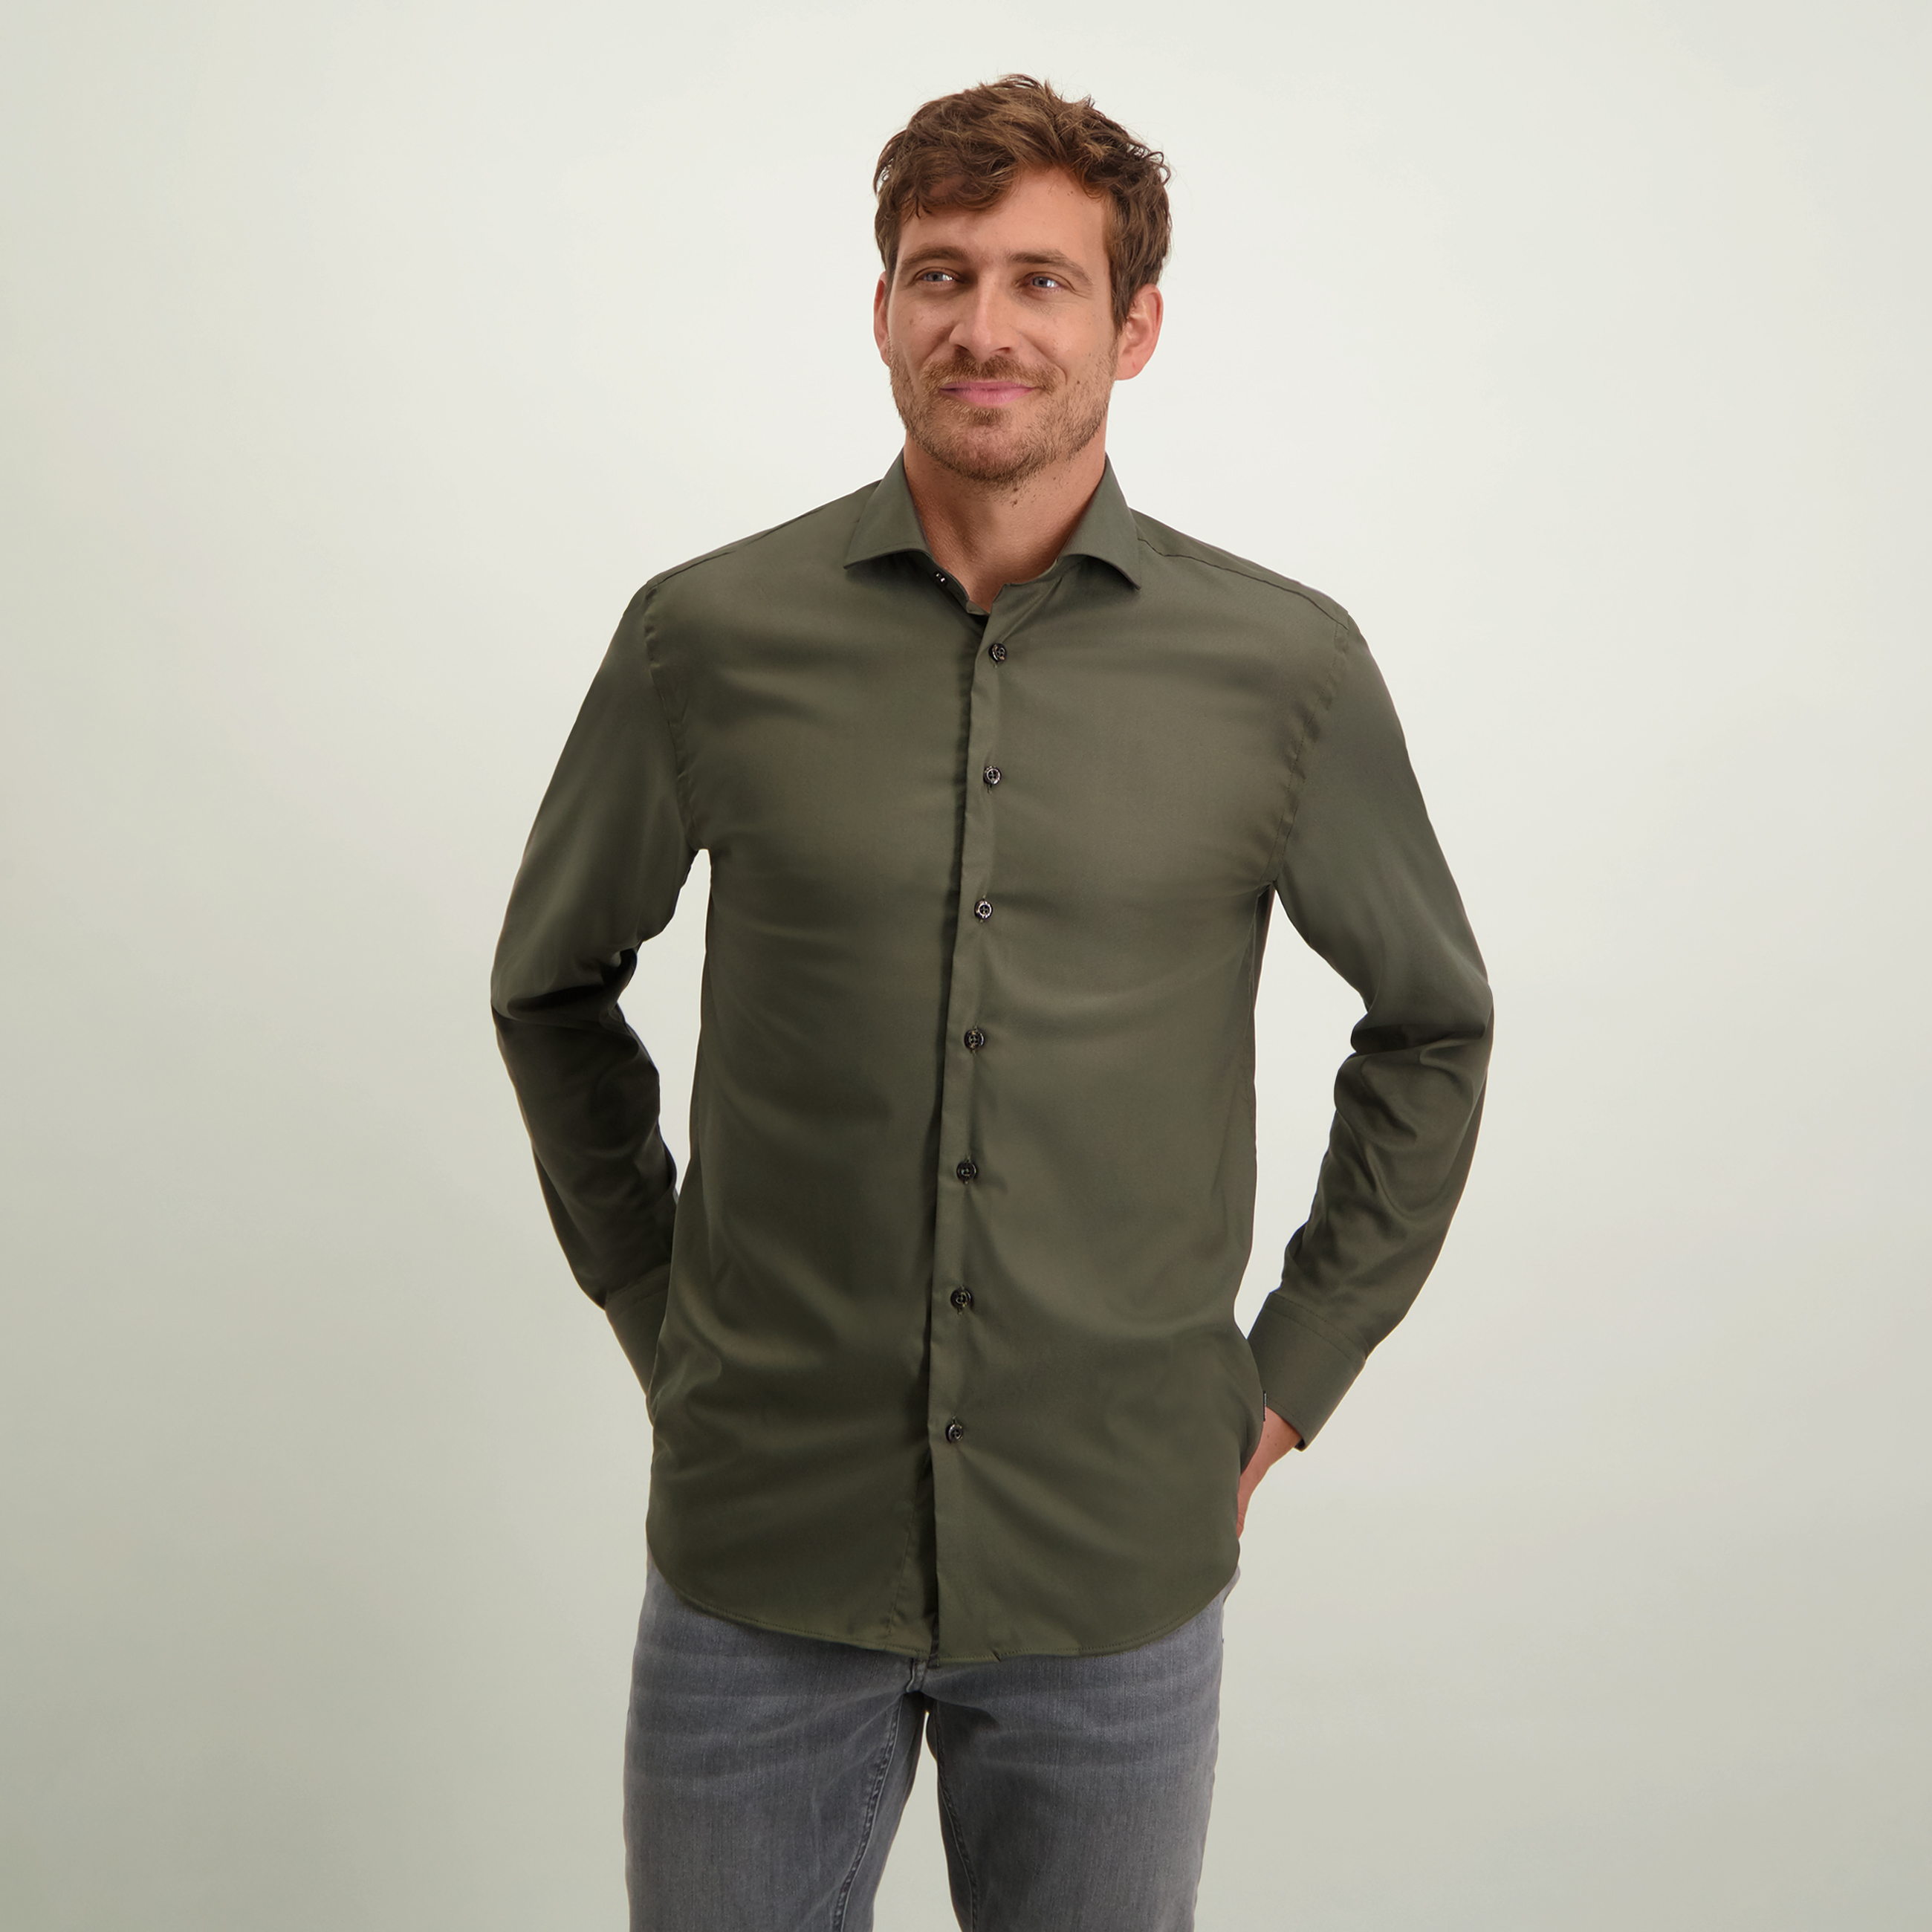 Blouse shirt ARABELLA in TENCEL™ Lyocell - Cedar Green (Tencel